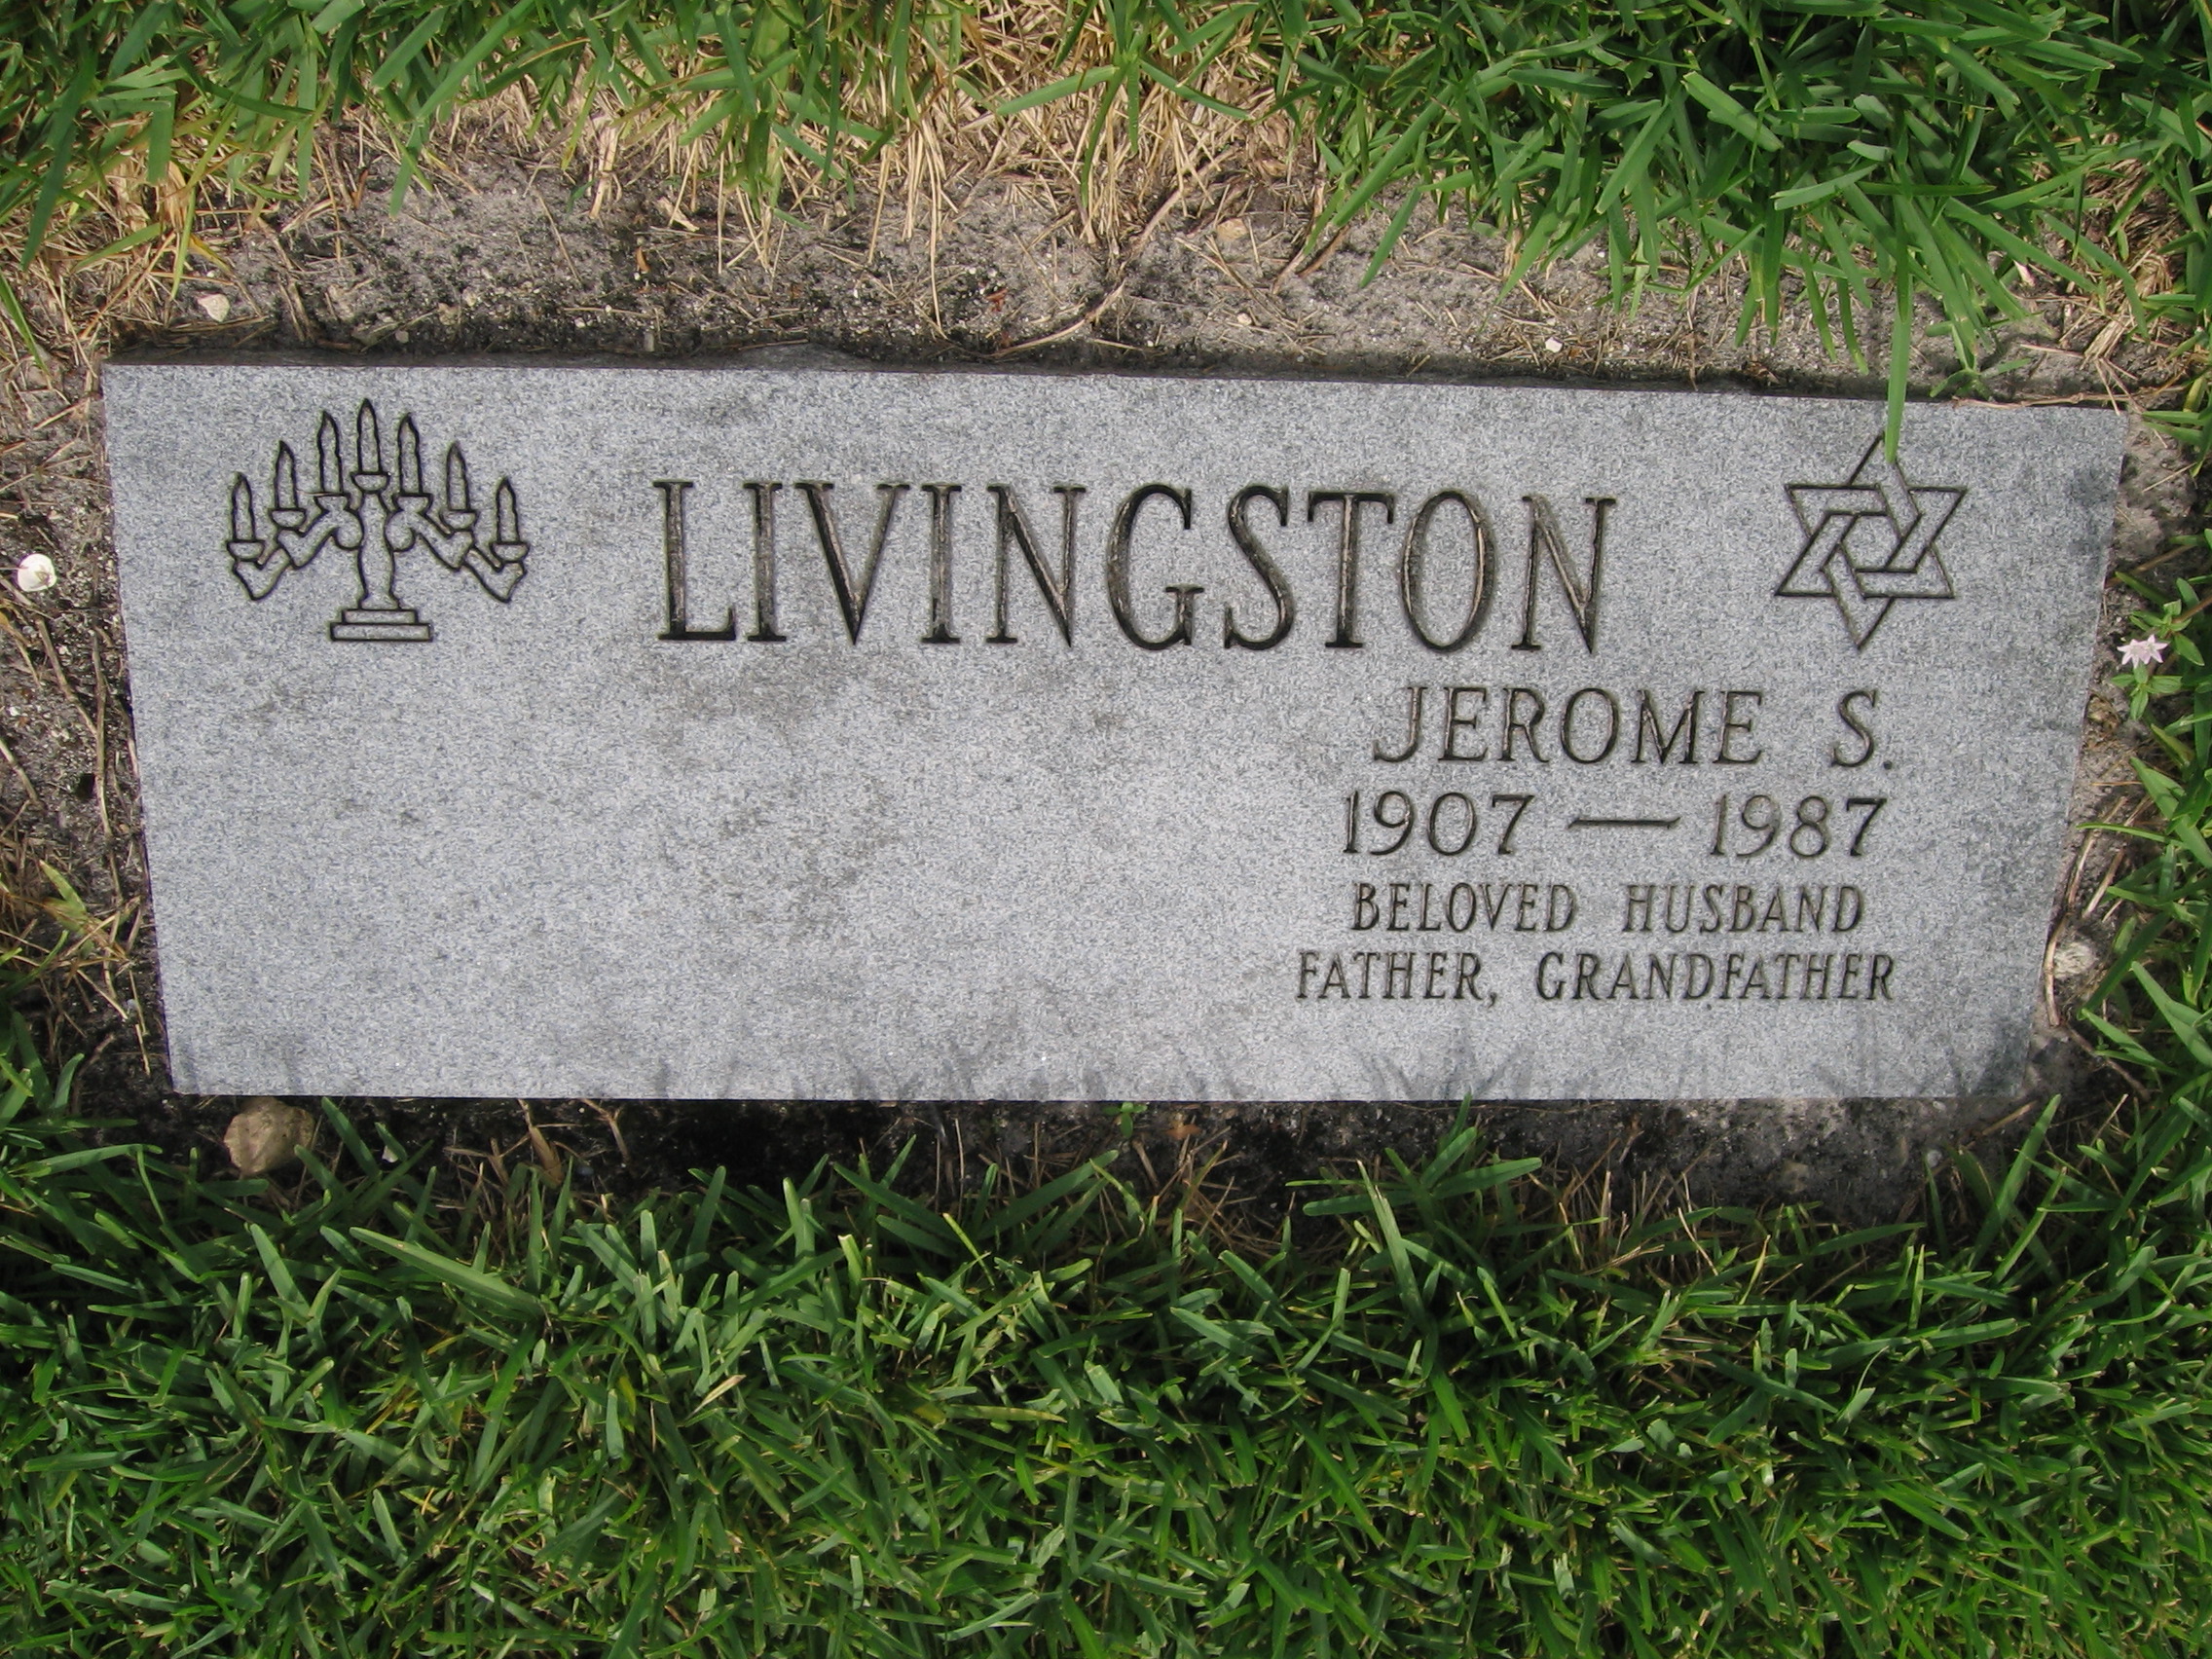 Jerome S Livingston